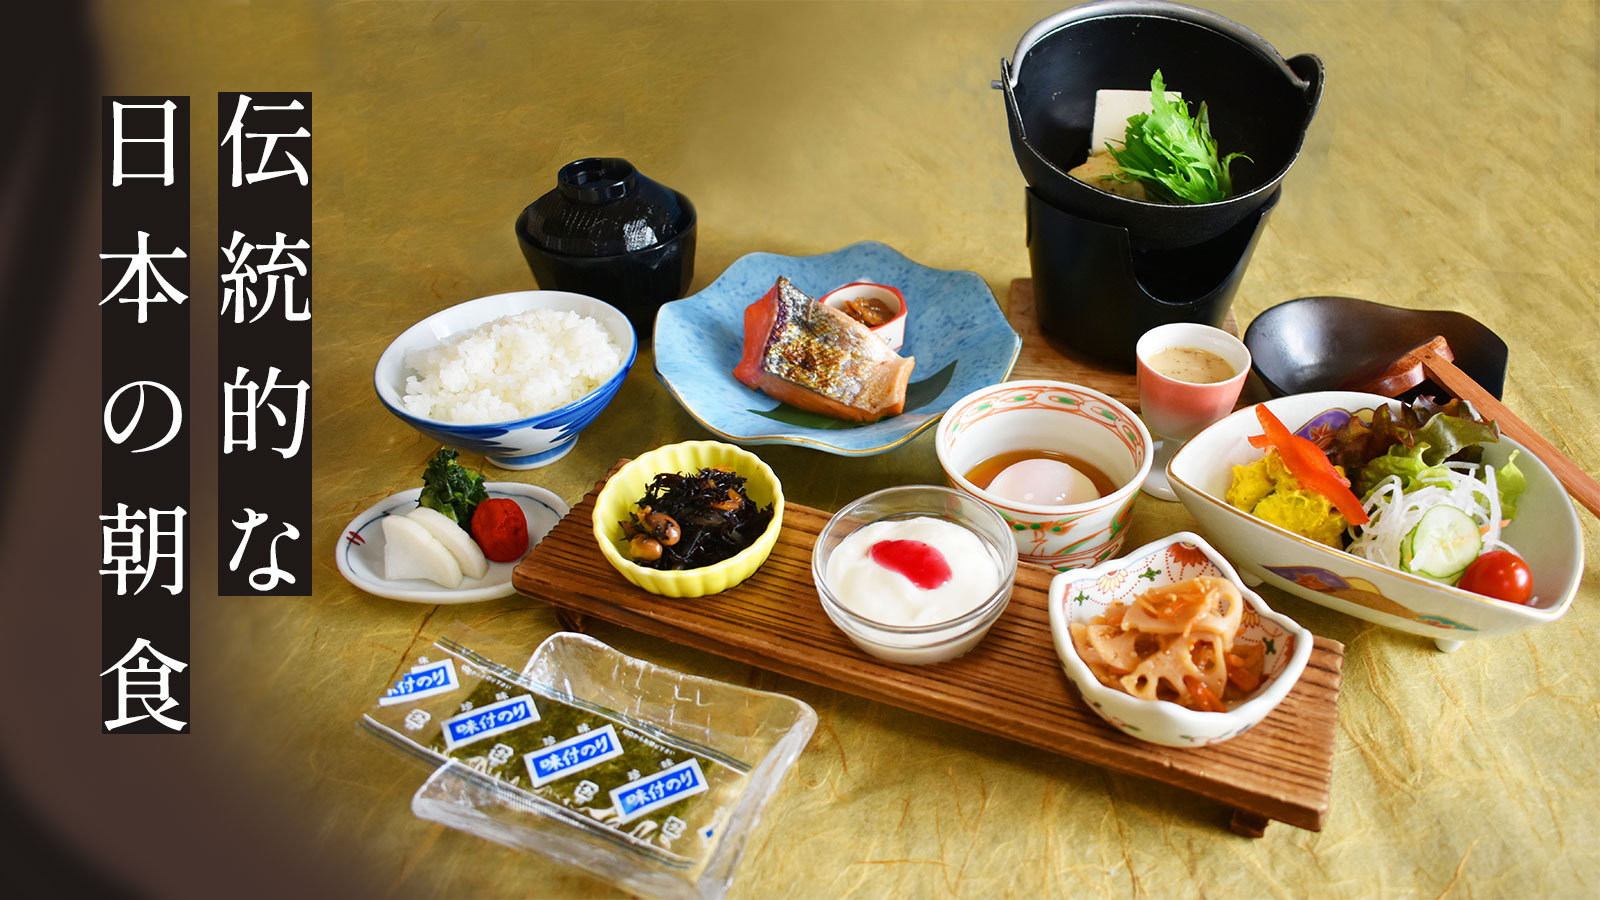 【朝食付】那須高原産の「野菜」や「牛乳」が大人気のご朝食♪「源泉かけ流し天然温泉・貸切露天風呂」